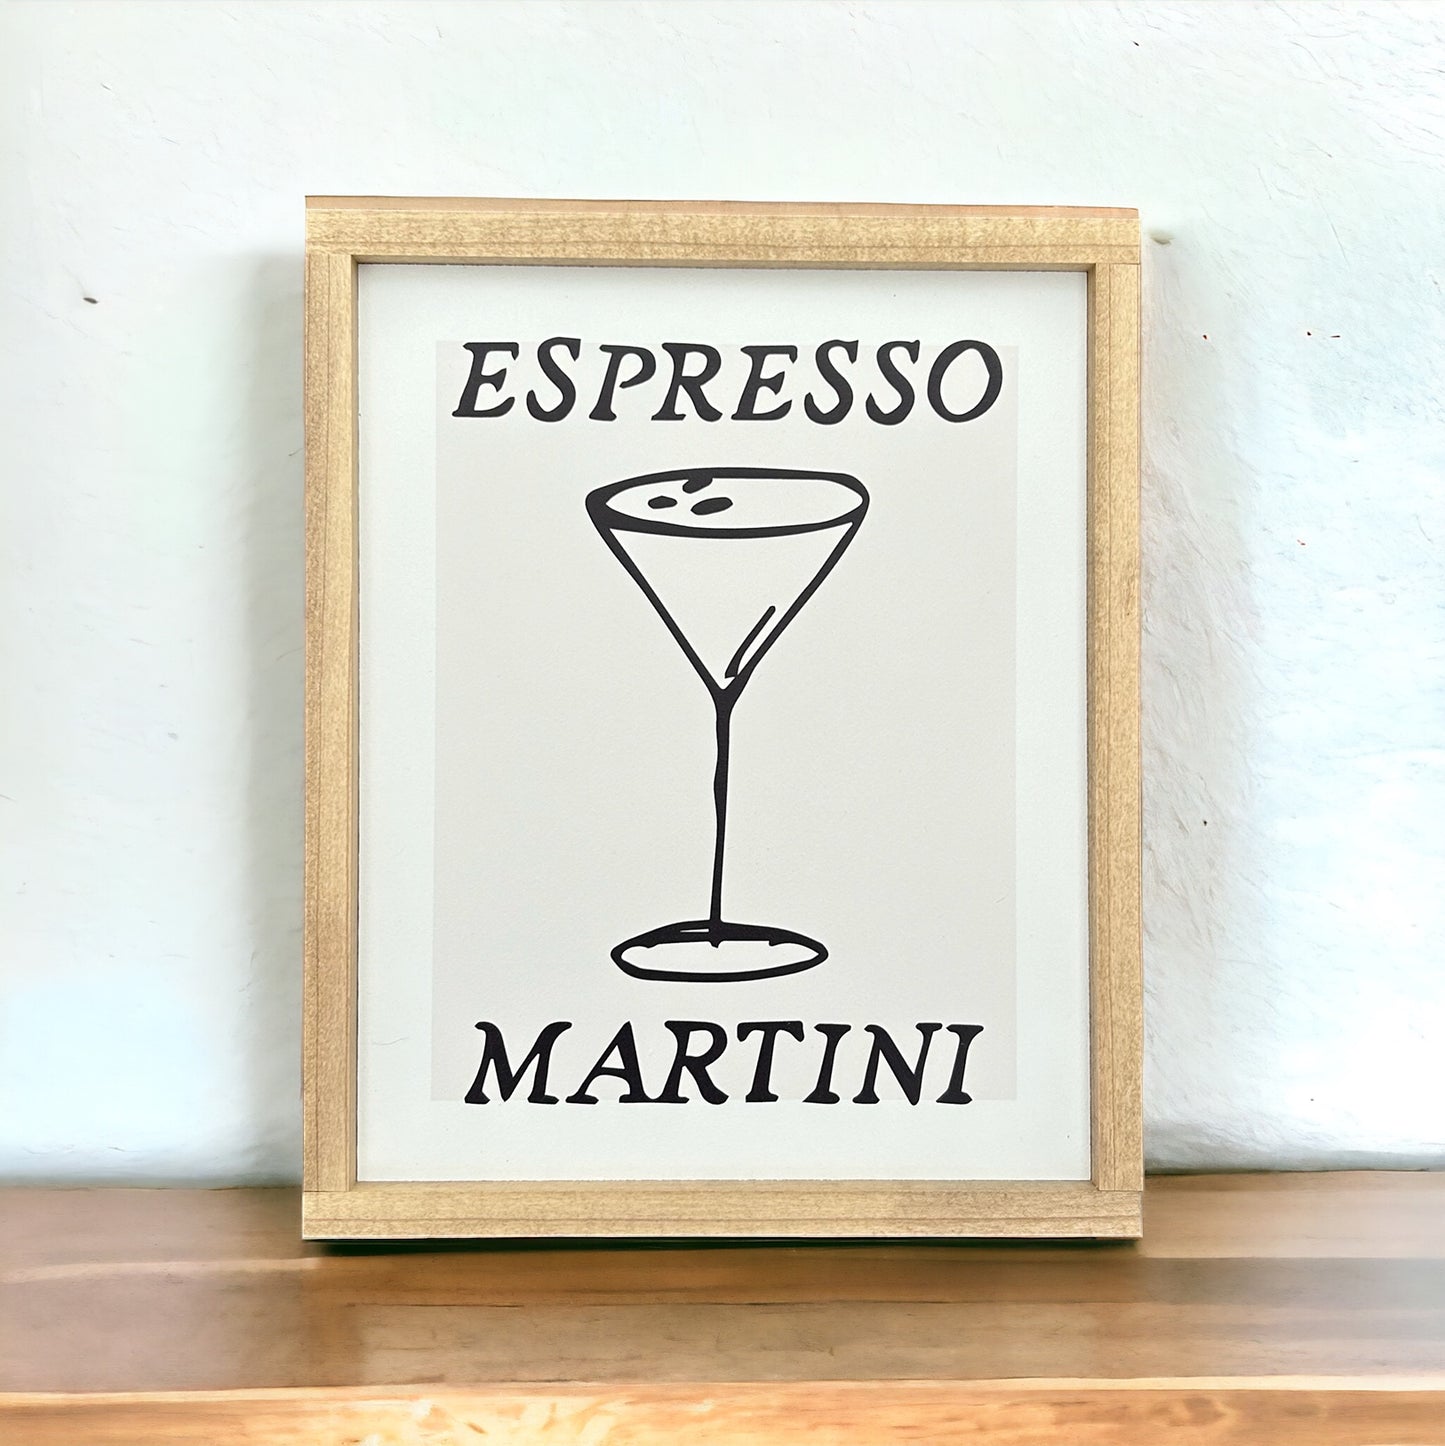 Espresso Martini Sign